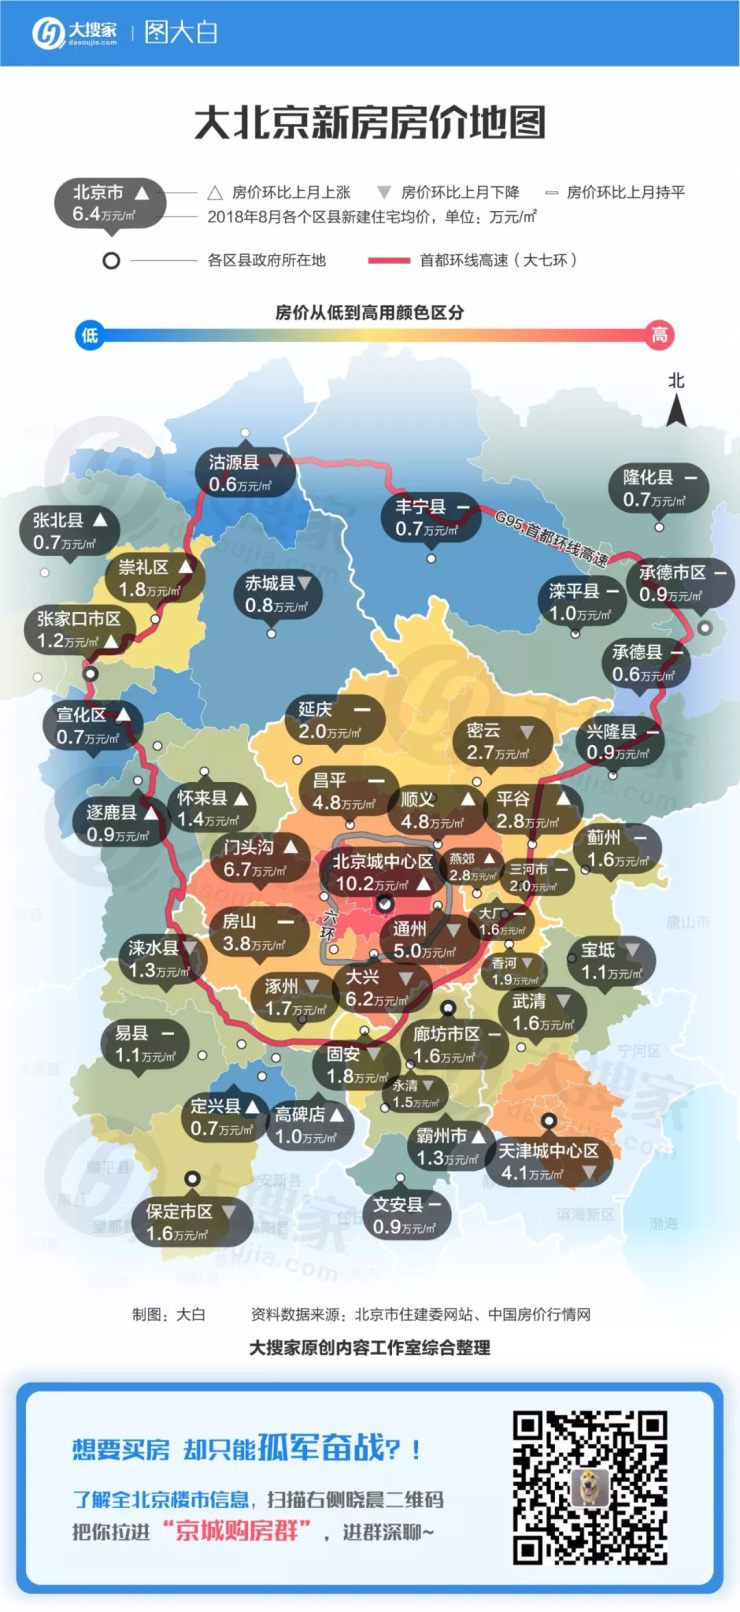 七环开通后 大北京新房房价地图出炉!